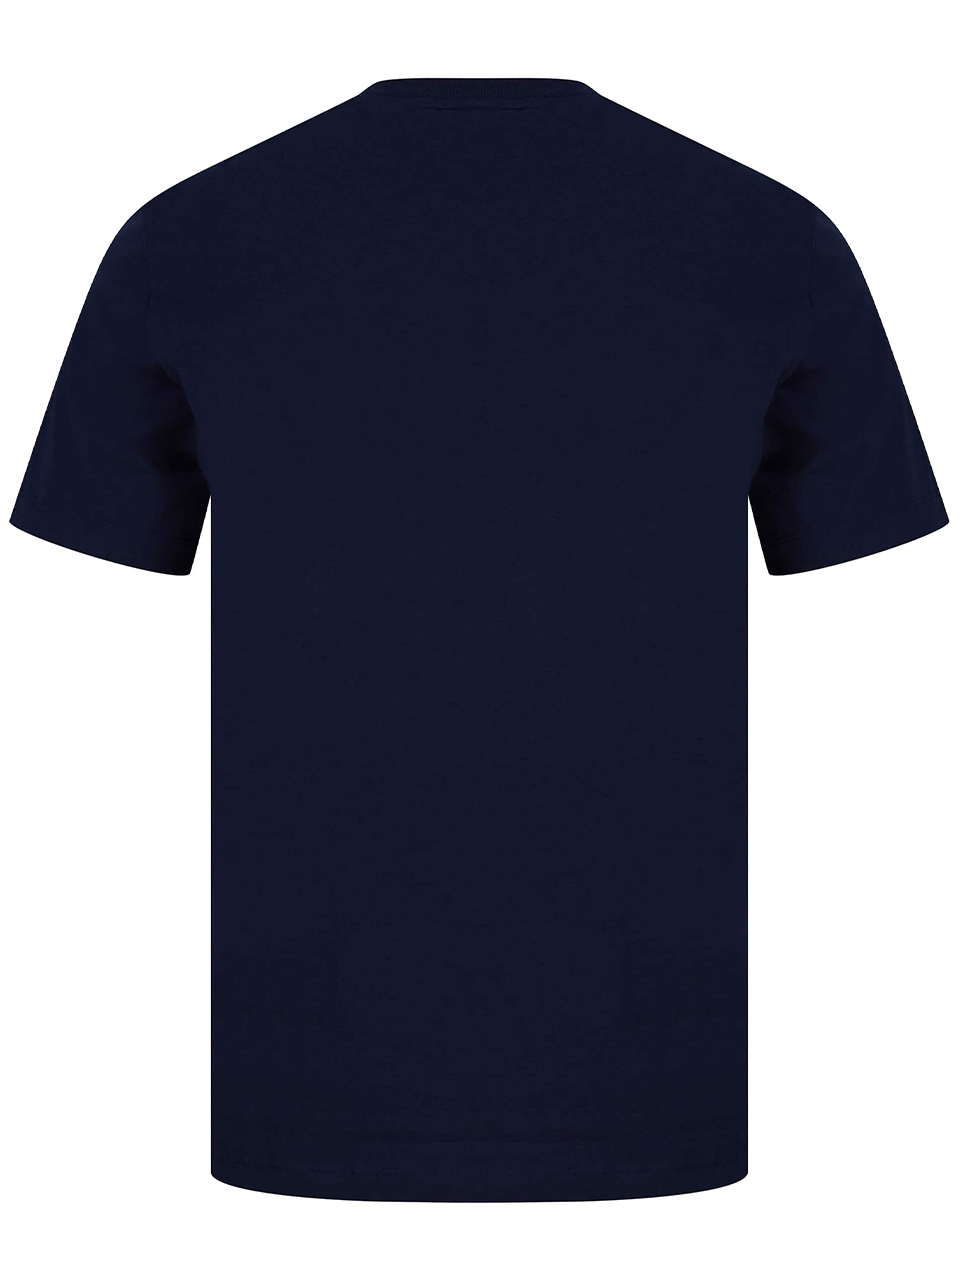 Imagem de: Camiseta Lacoste Azul com Estampa